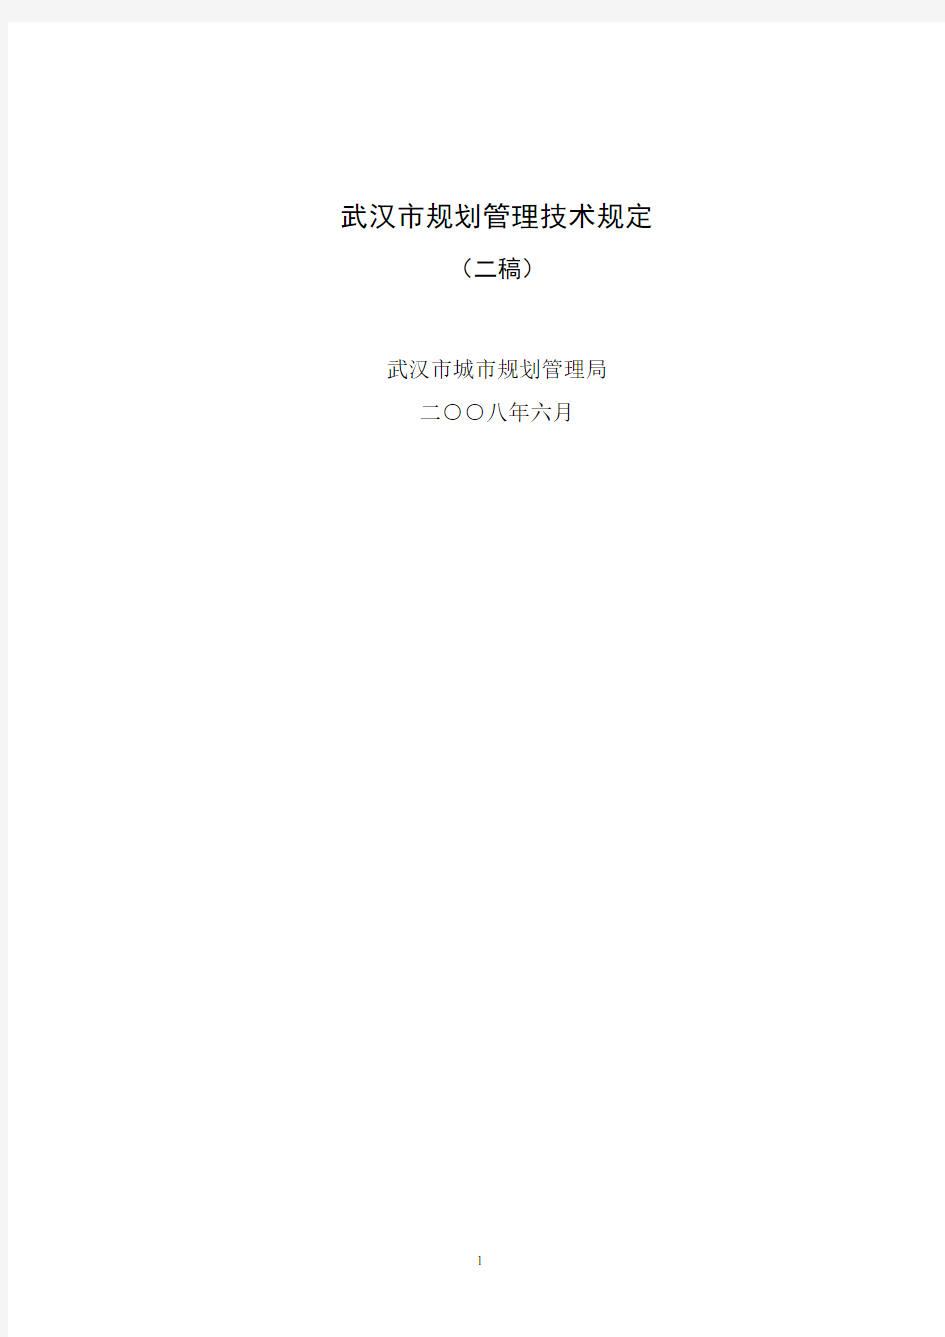 2008武汉市规划管理技术规定(最新试行版)